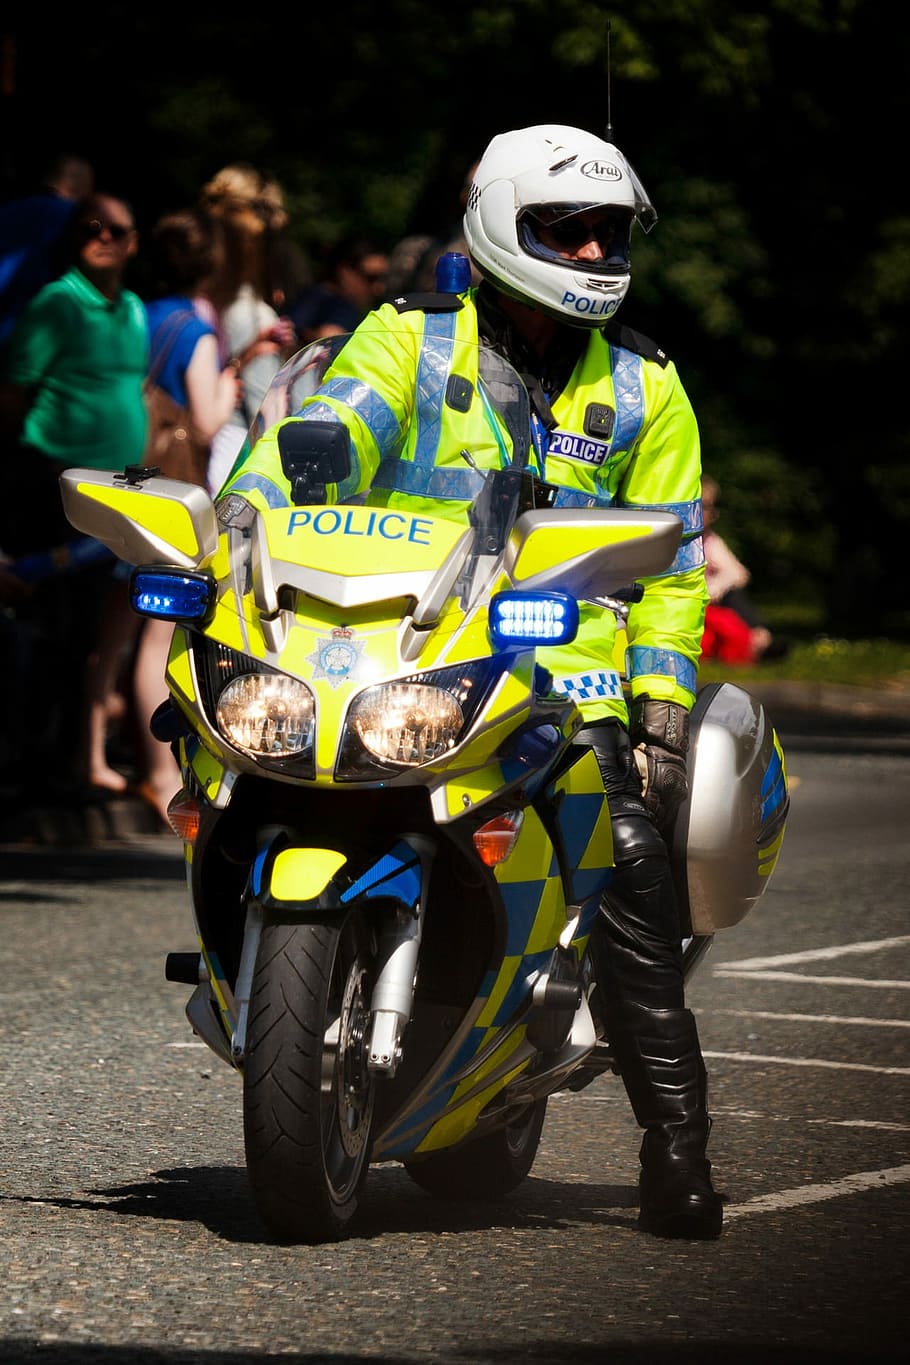 policía, equitación, moto policial, bicicleta, británico, cumplimiento de la ley, inglés, gafas, ley, hombre